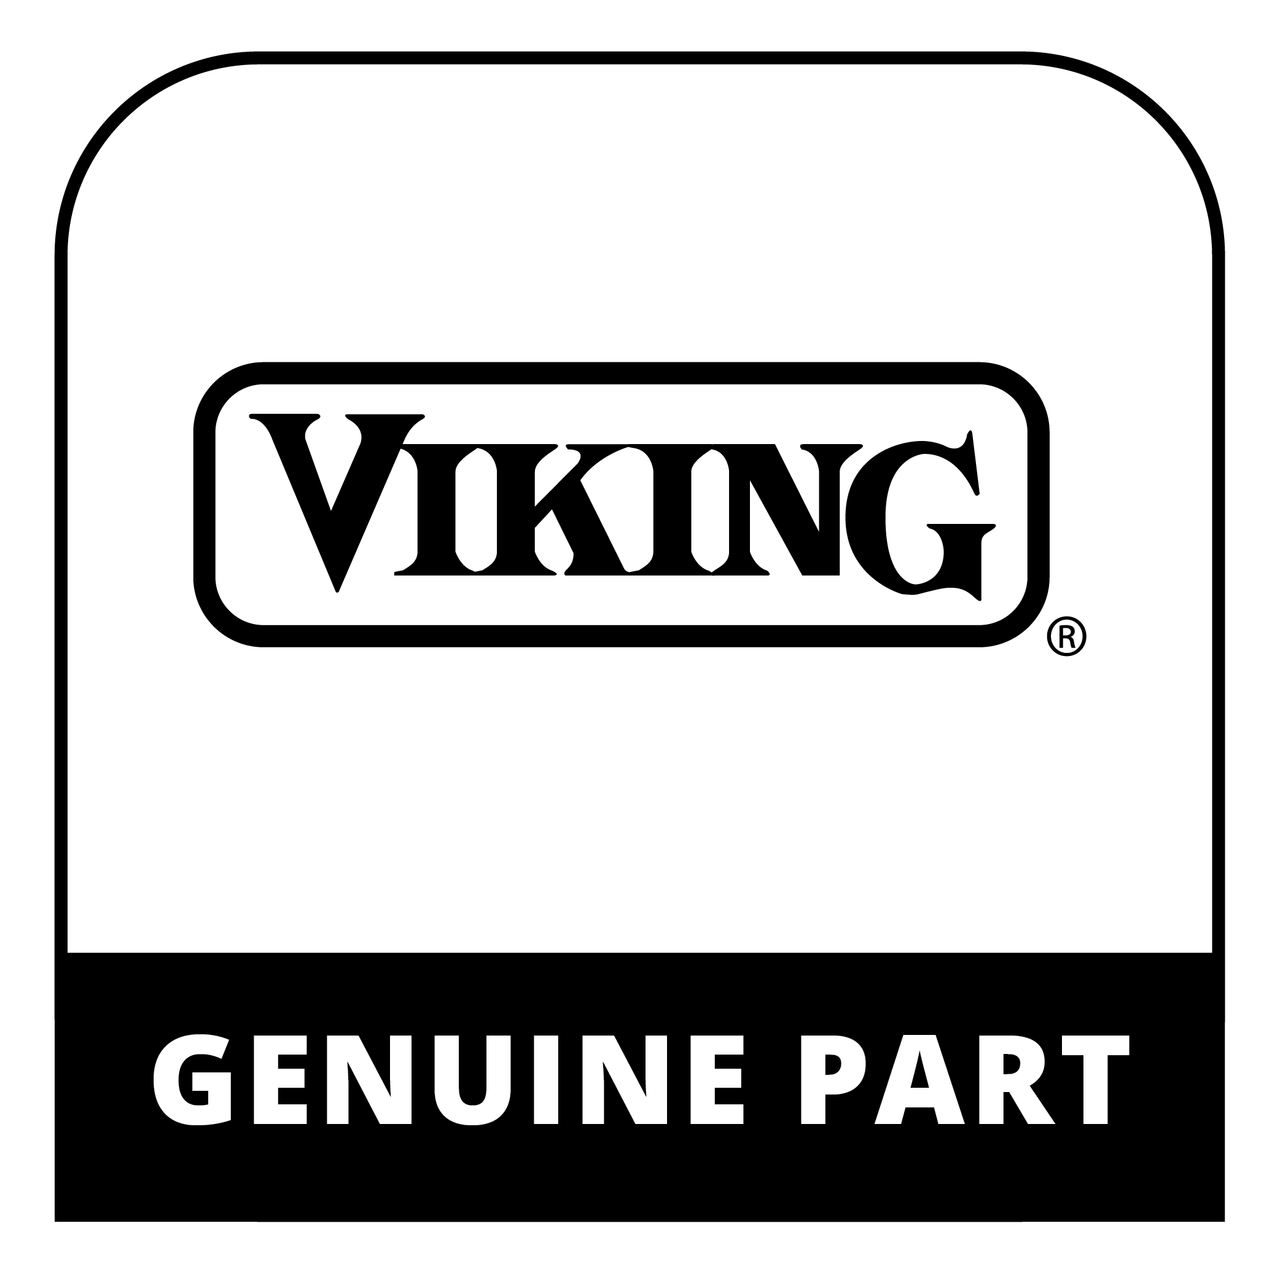 Viking 051131-2529 - PAN, BNR, ETCHED, 30 - Genuine Viking Part